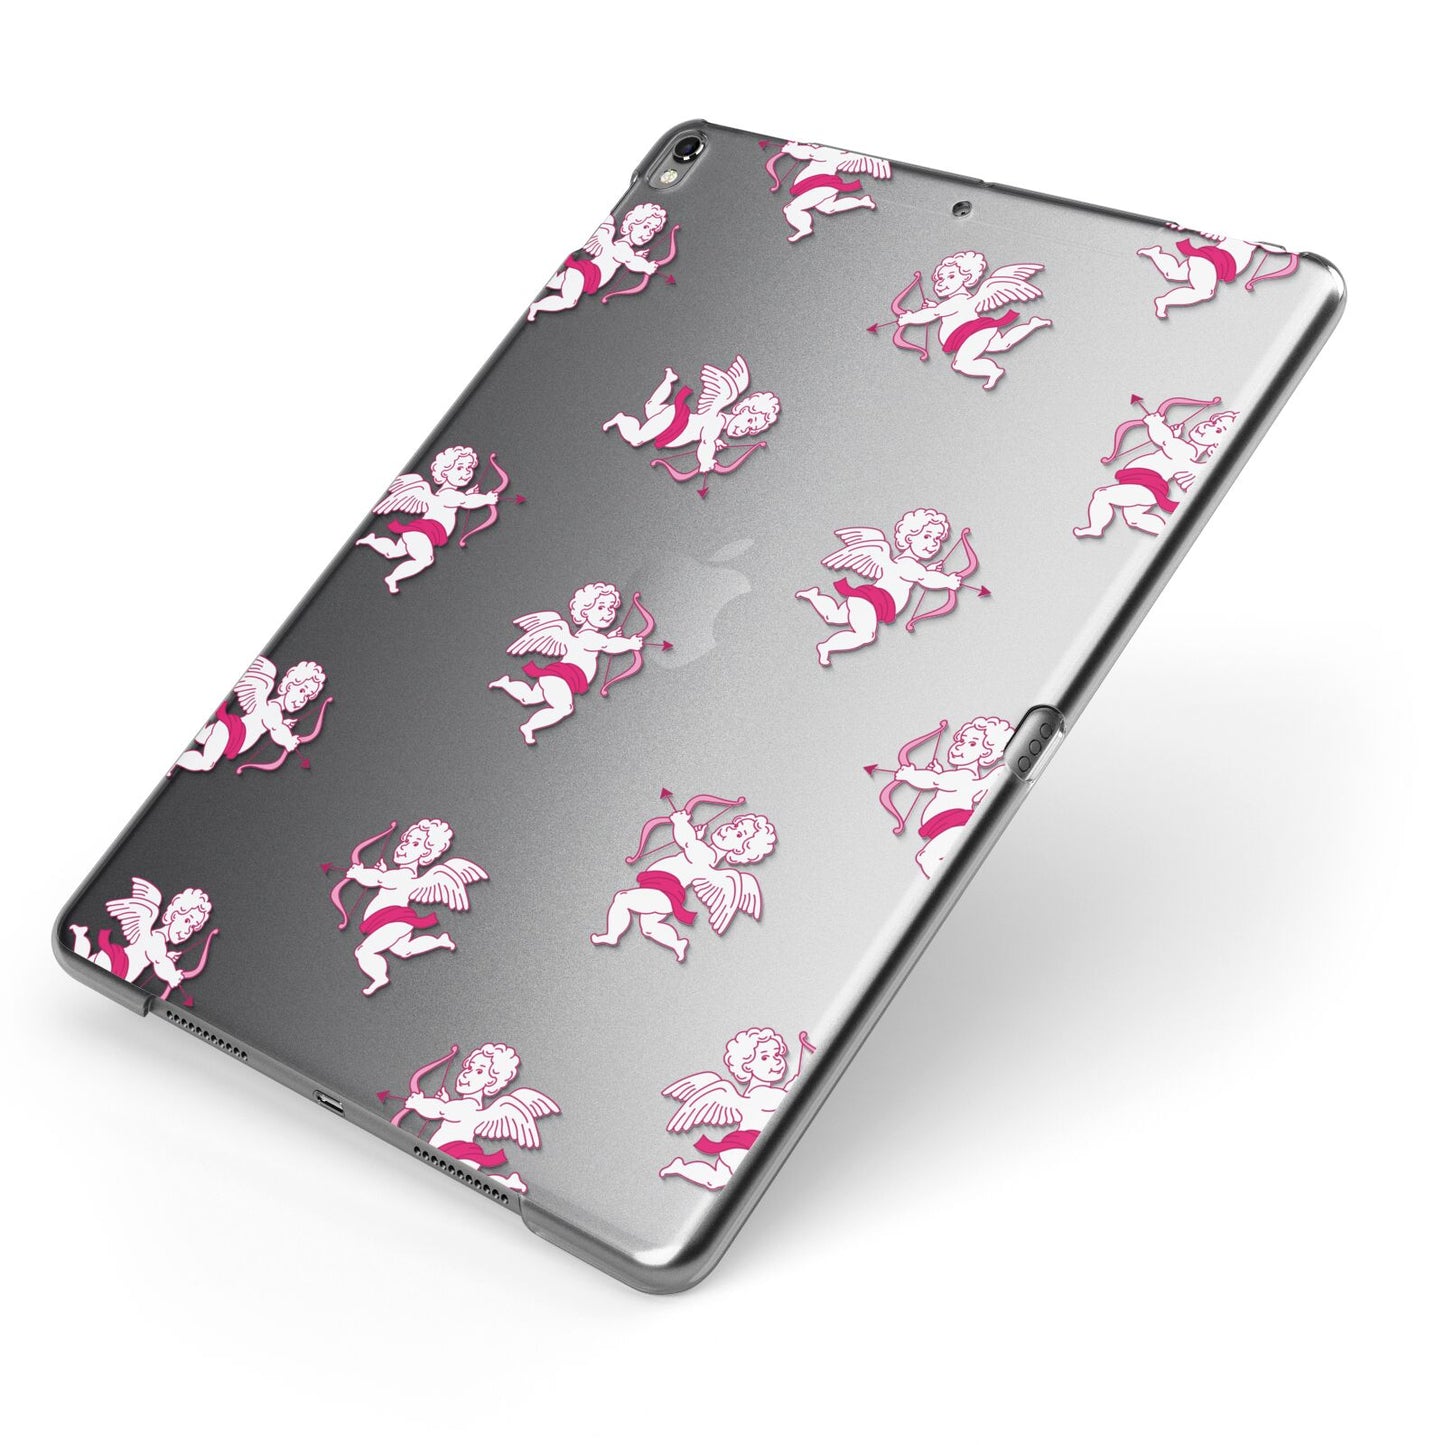 Cupid Apple iPad Case on Grey iPad Side View